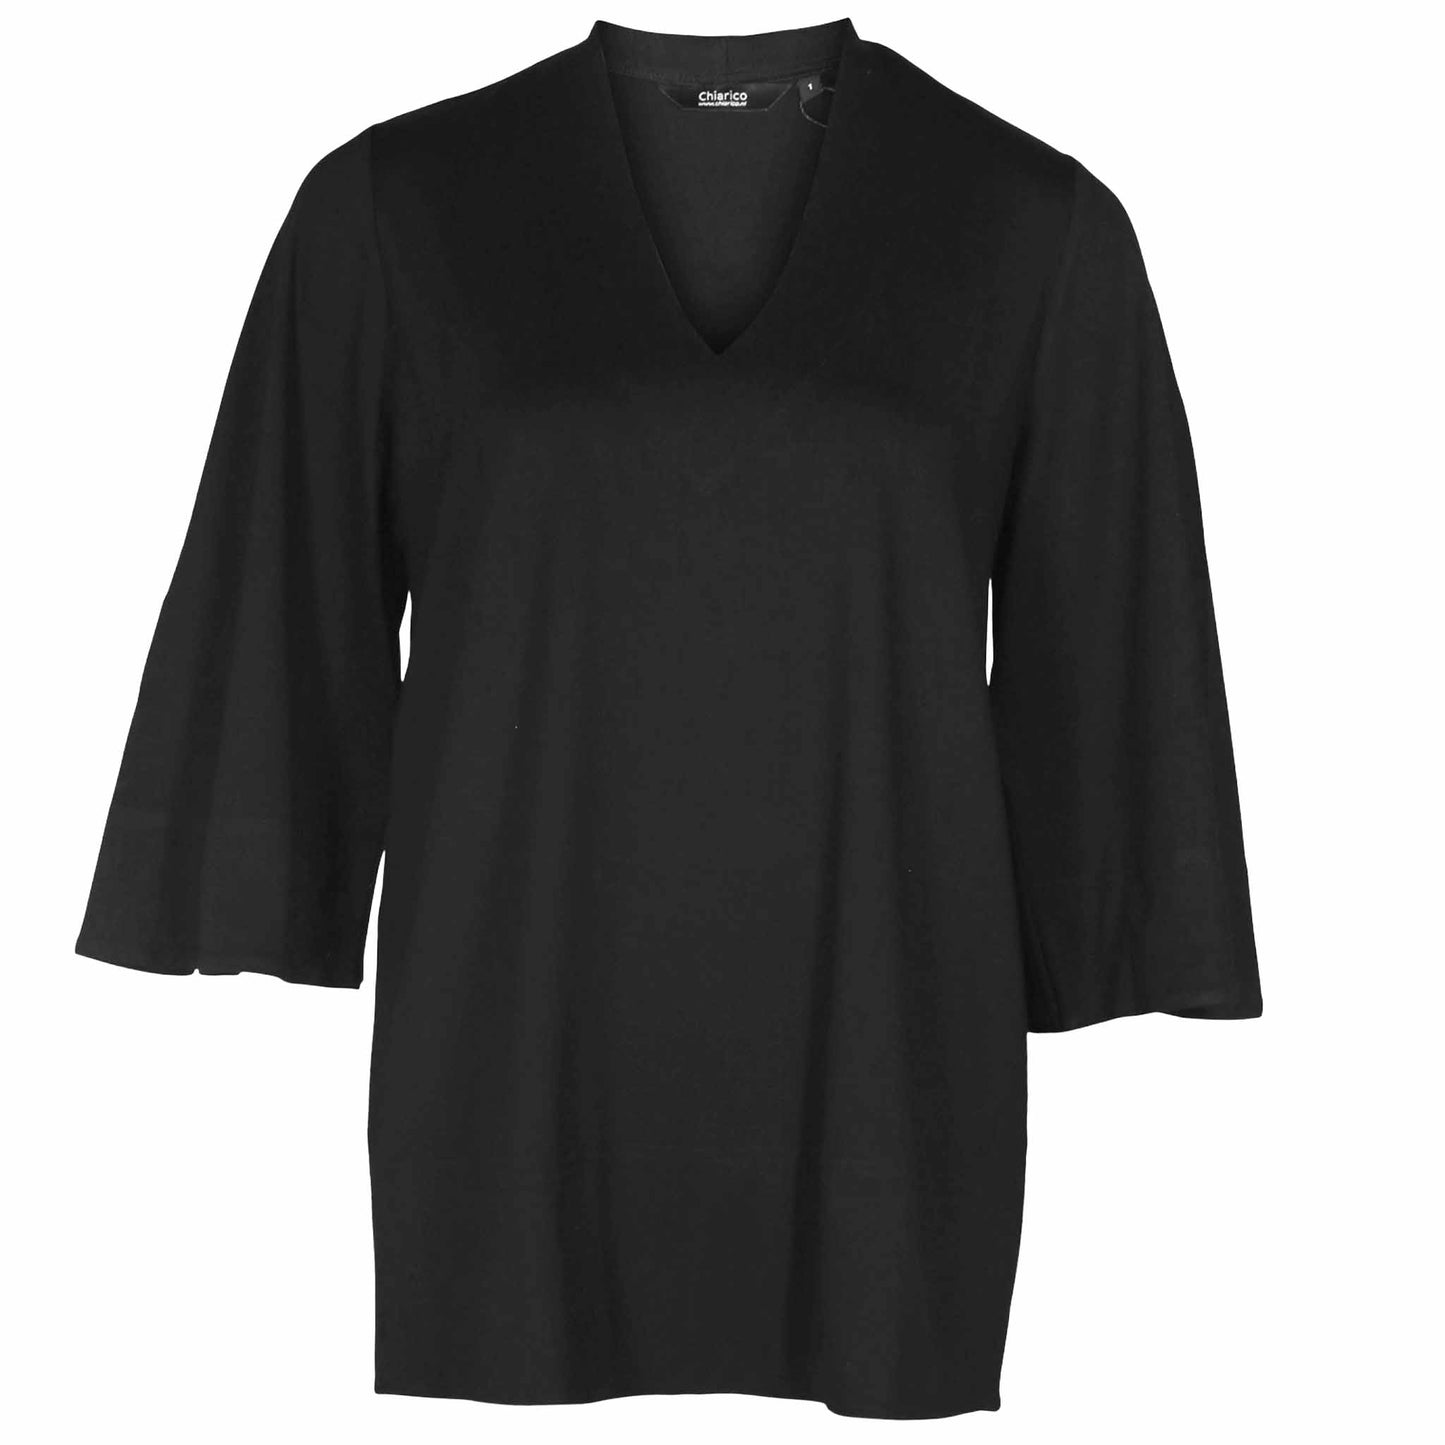 long women's clothing chiarico shirt kimo